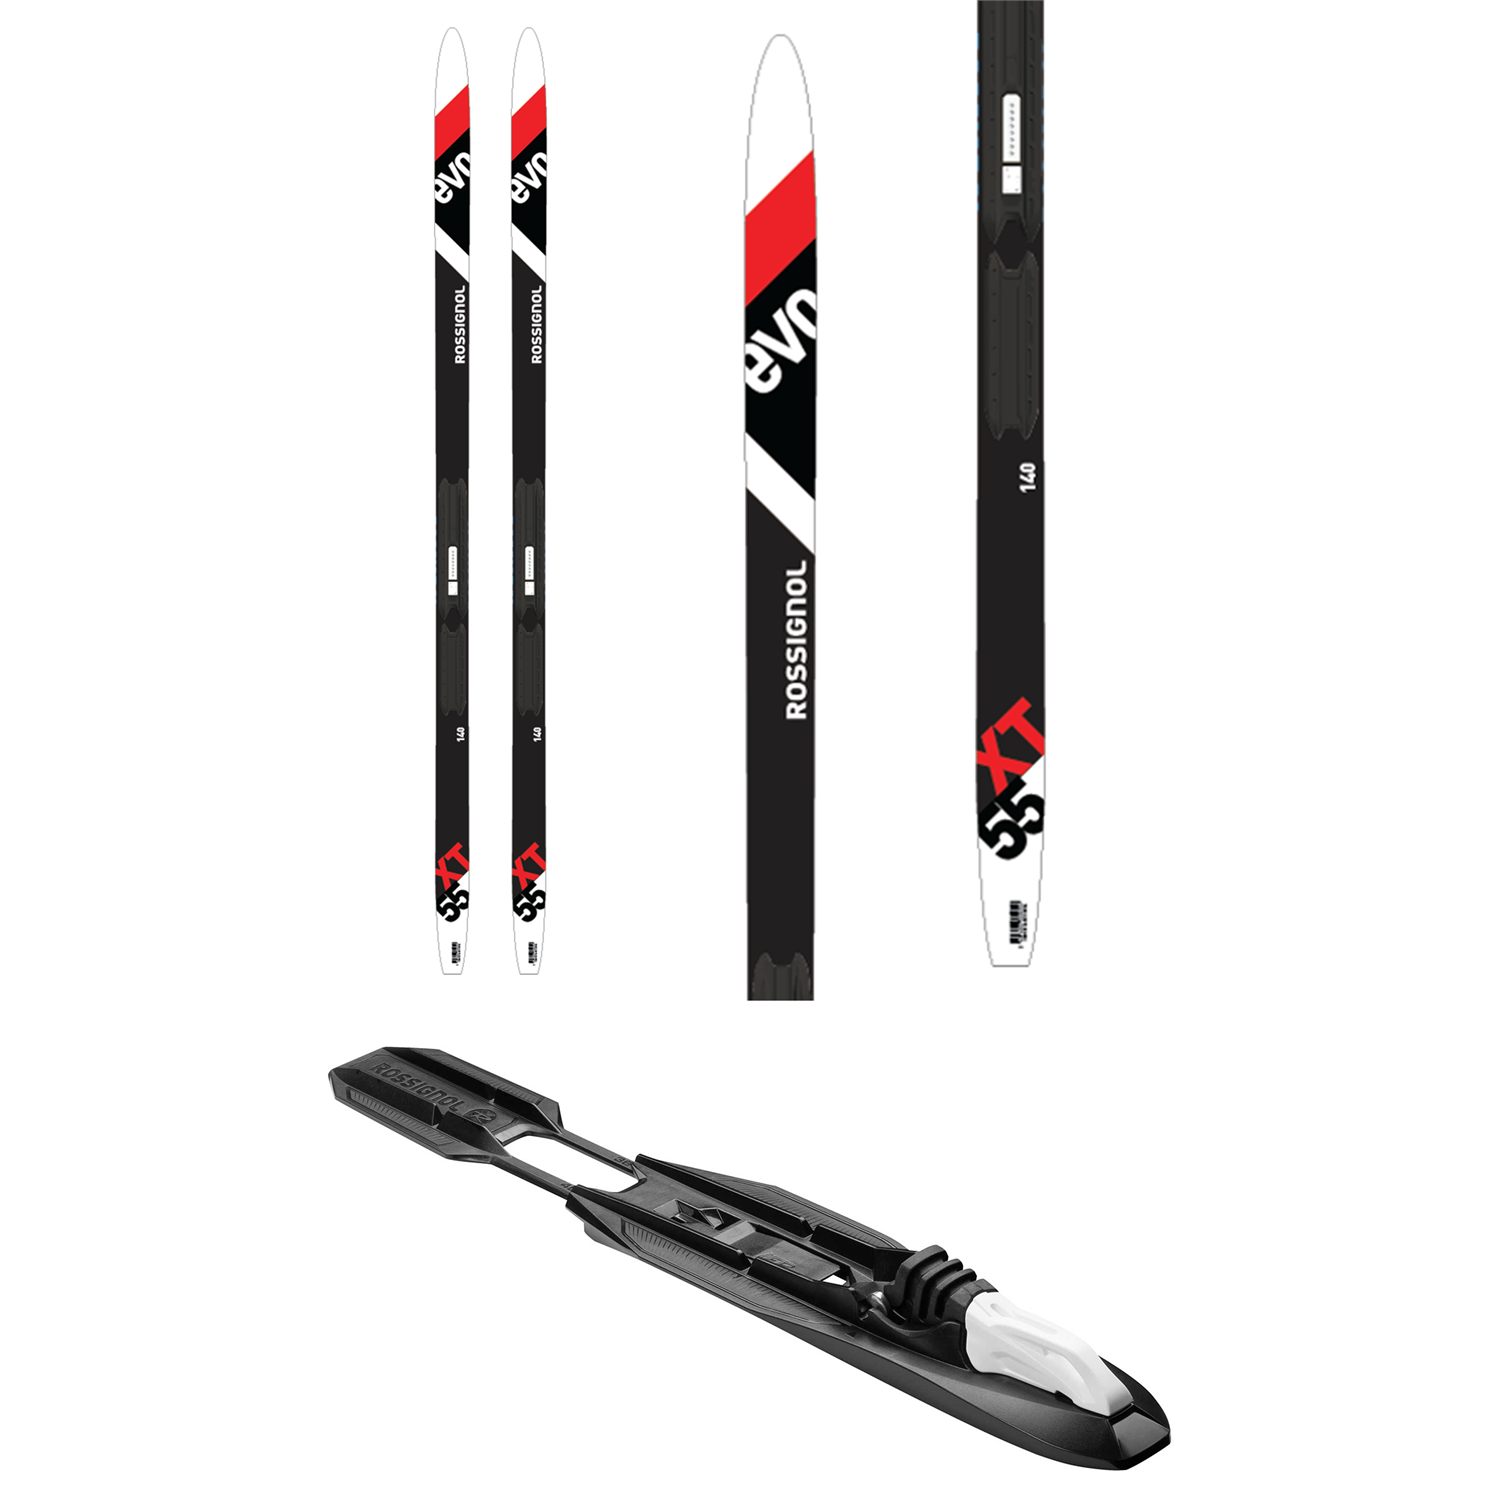 Buy > rossignol evo xc skis > in stock